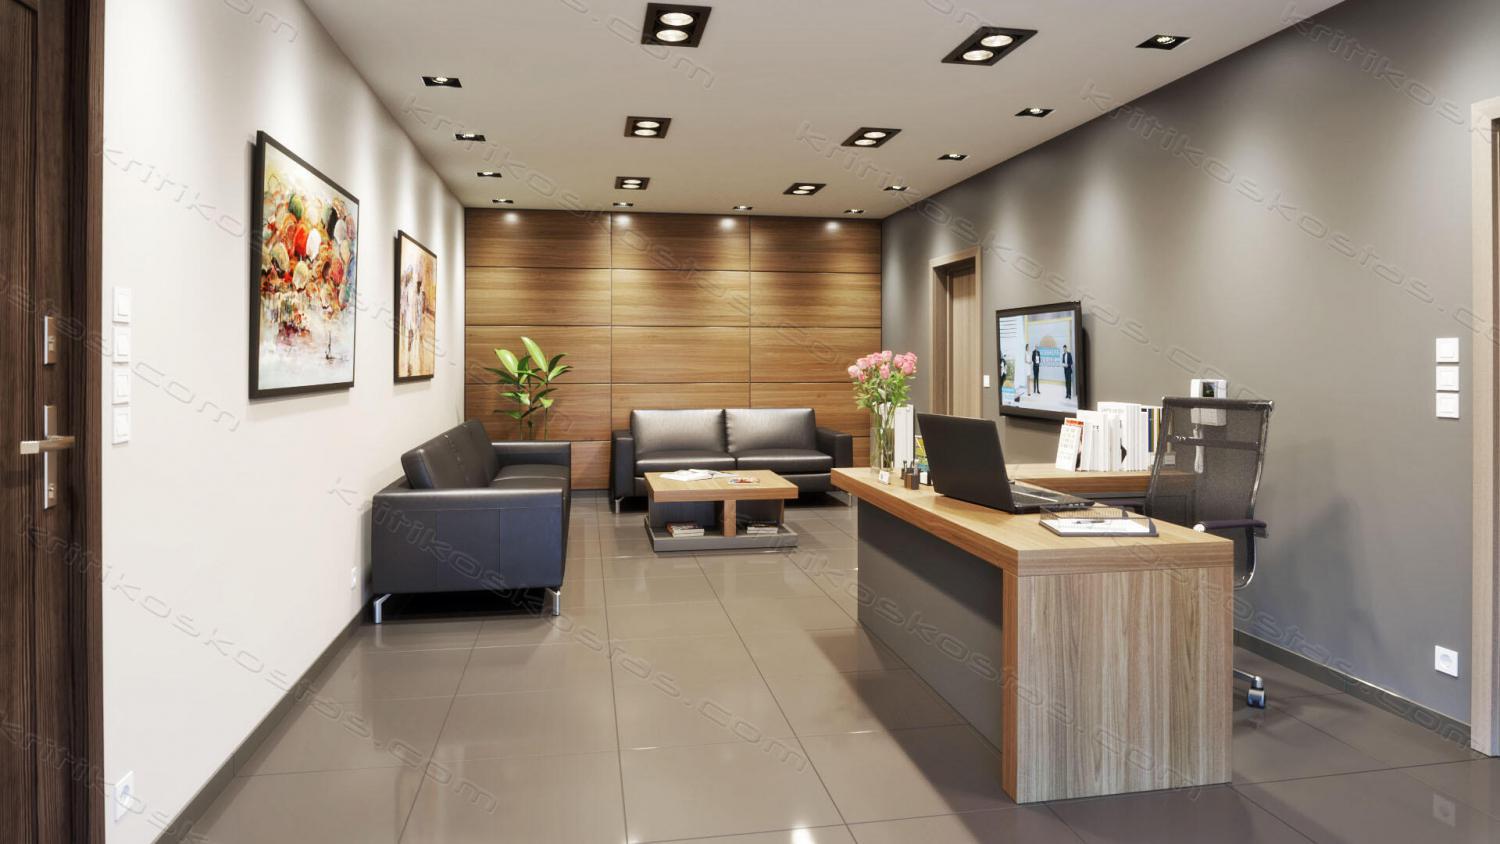 170714_3d-clinics-waiting-room-interior-design-05